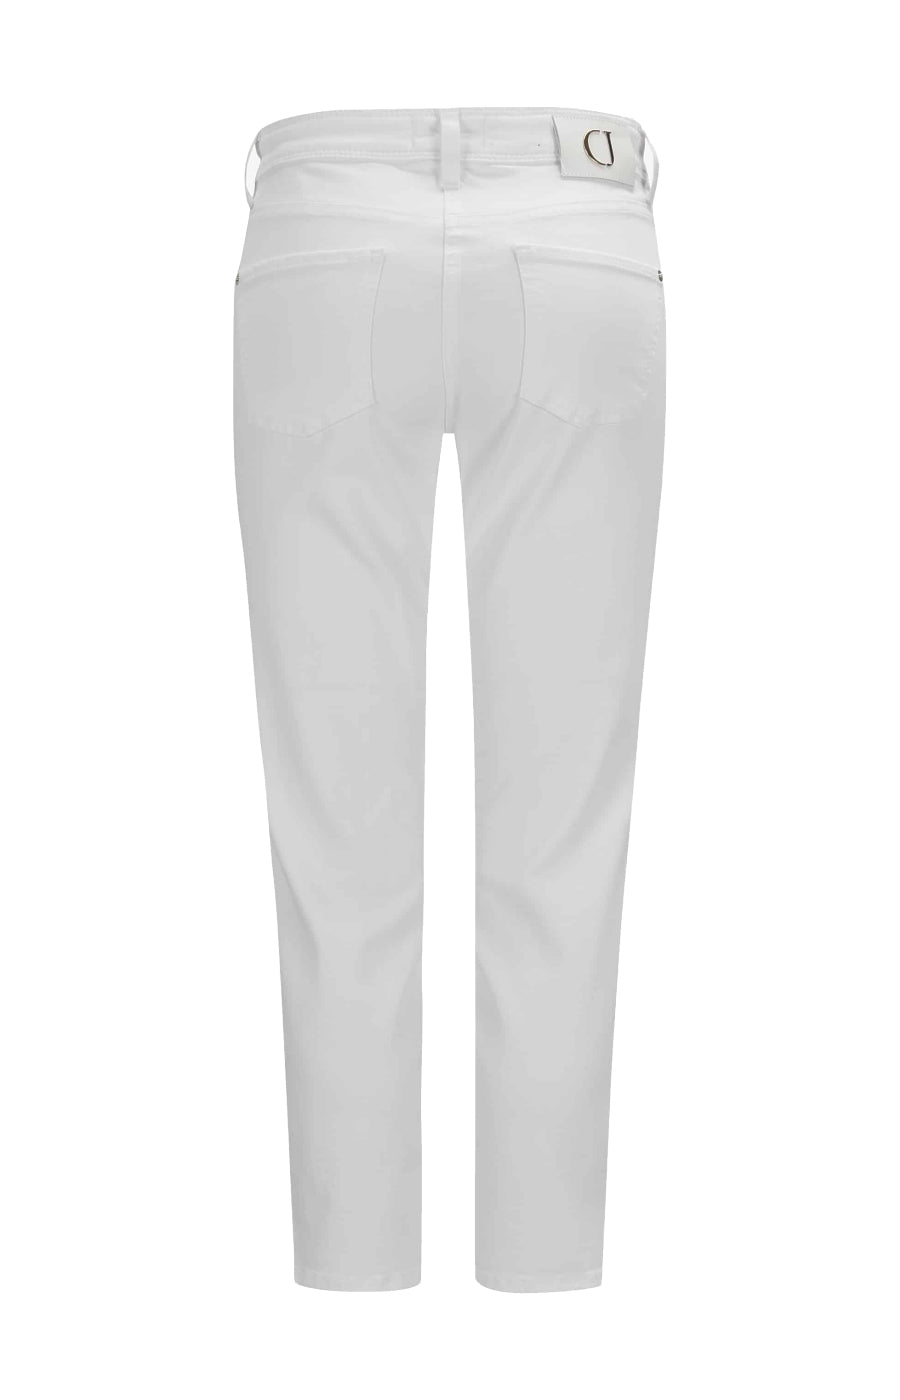 Cambio Jeans Piper short in weiß. Schmal geschnittene 5-Pocket Hose in weichem Denim Stretch von Cambio online kaufen. Slim fit Jeans mit sommerlicher 7/8 Länge aus der neuen Cambio Jeans Kollektion.